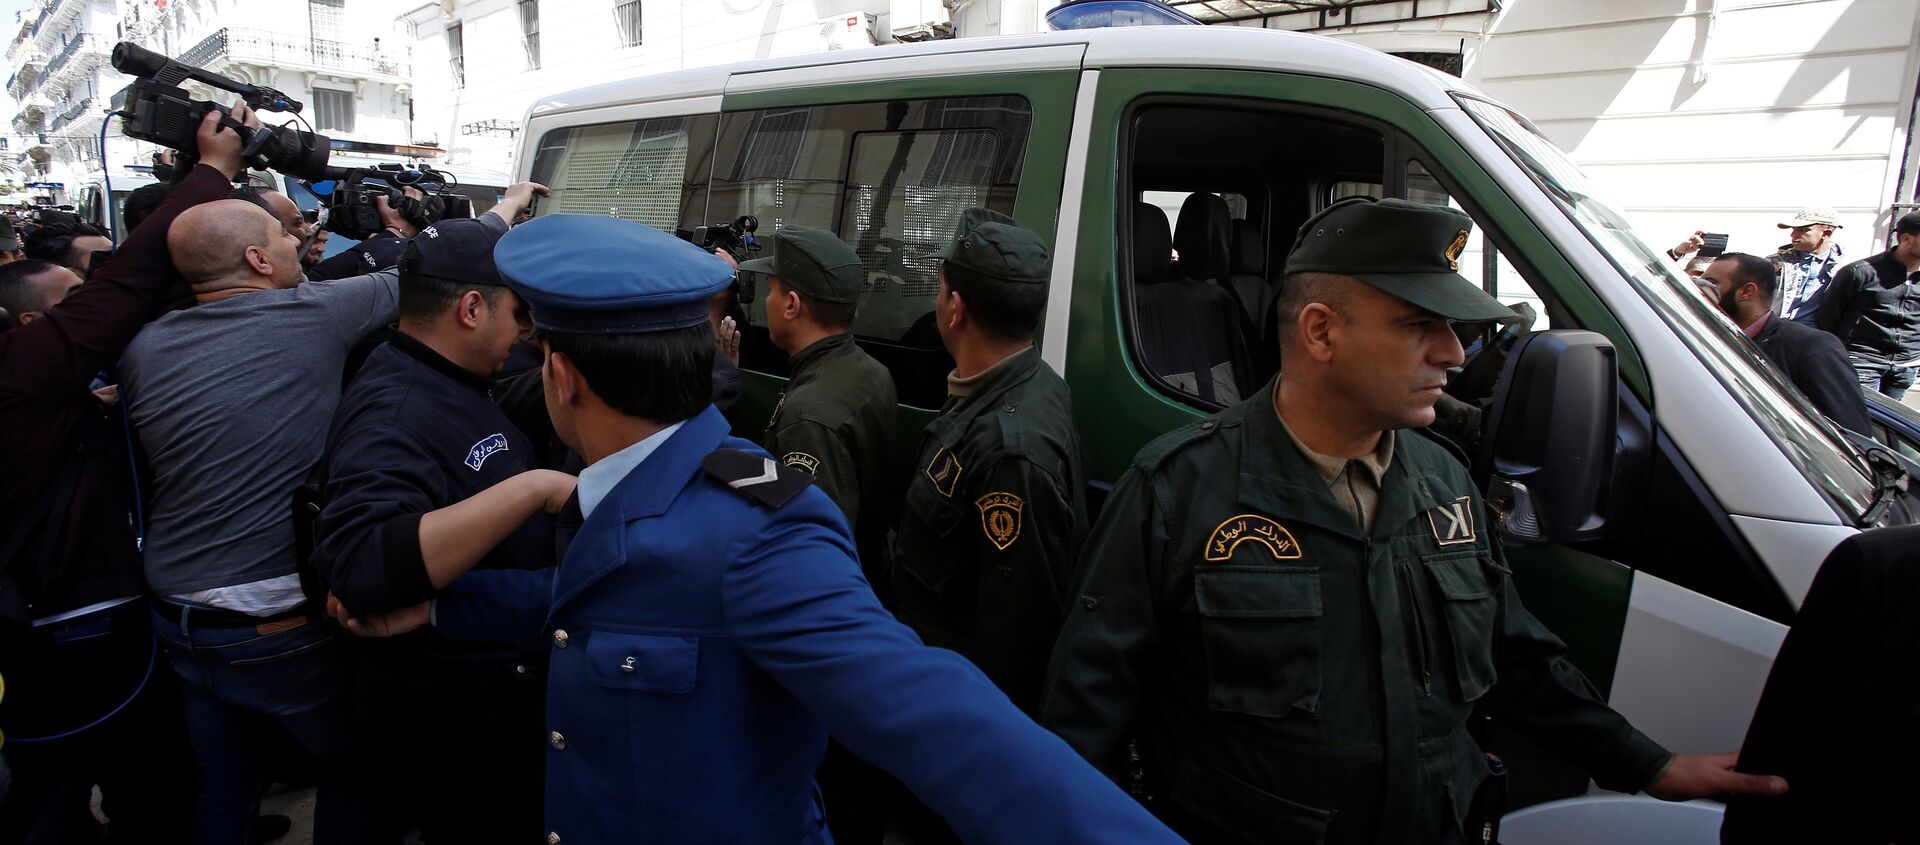 وسائل الإعلام والشرطة تحيط بقافلة من مركبات الشرطة بينما يتم نقل رجل أعمال مشتبه به إلى المحكمة في الجزائر - سبوتنيك عربي, 1920, 13.10.2021